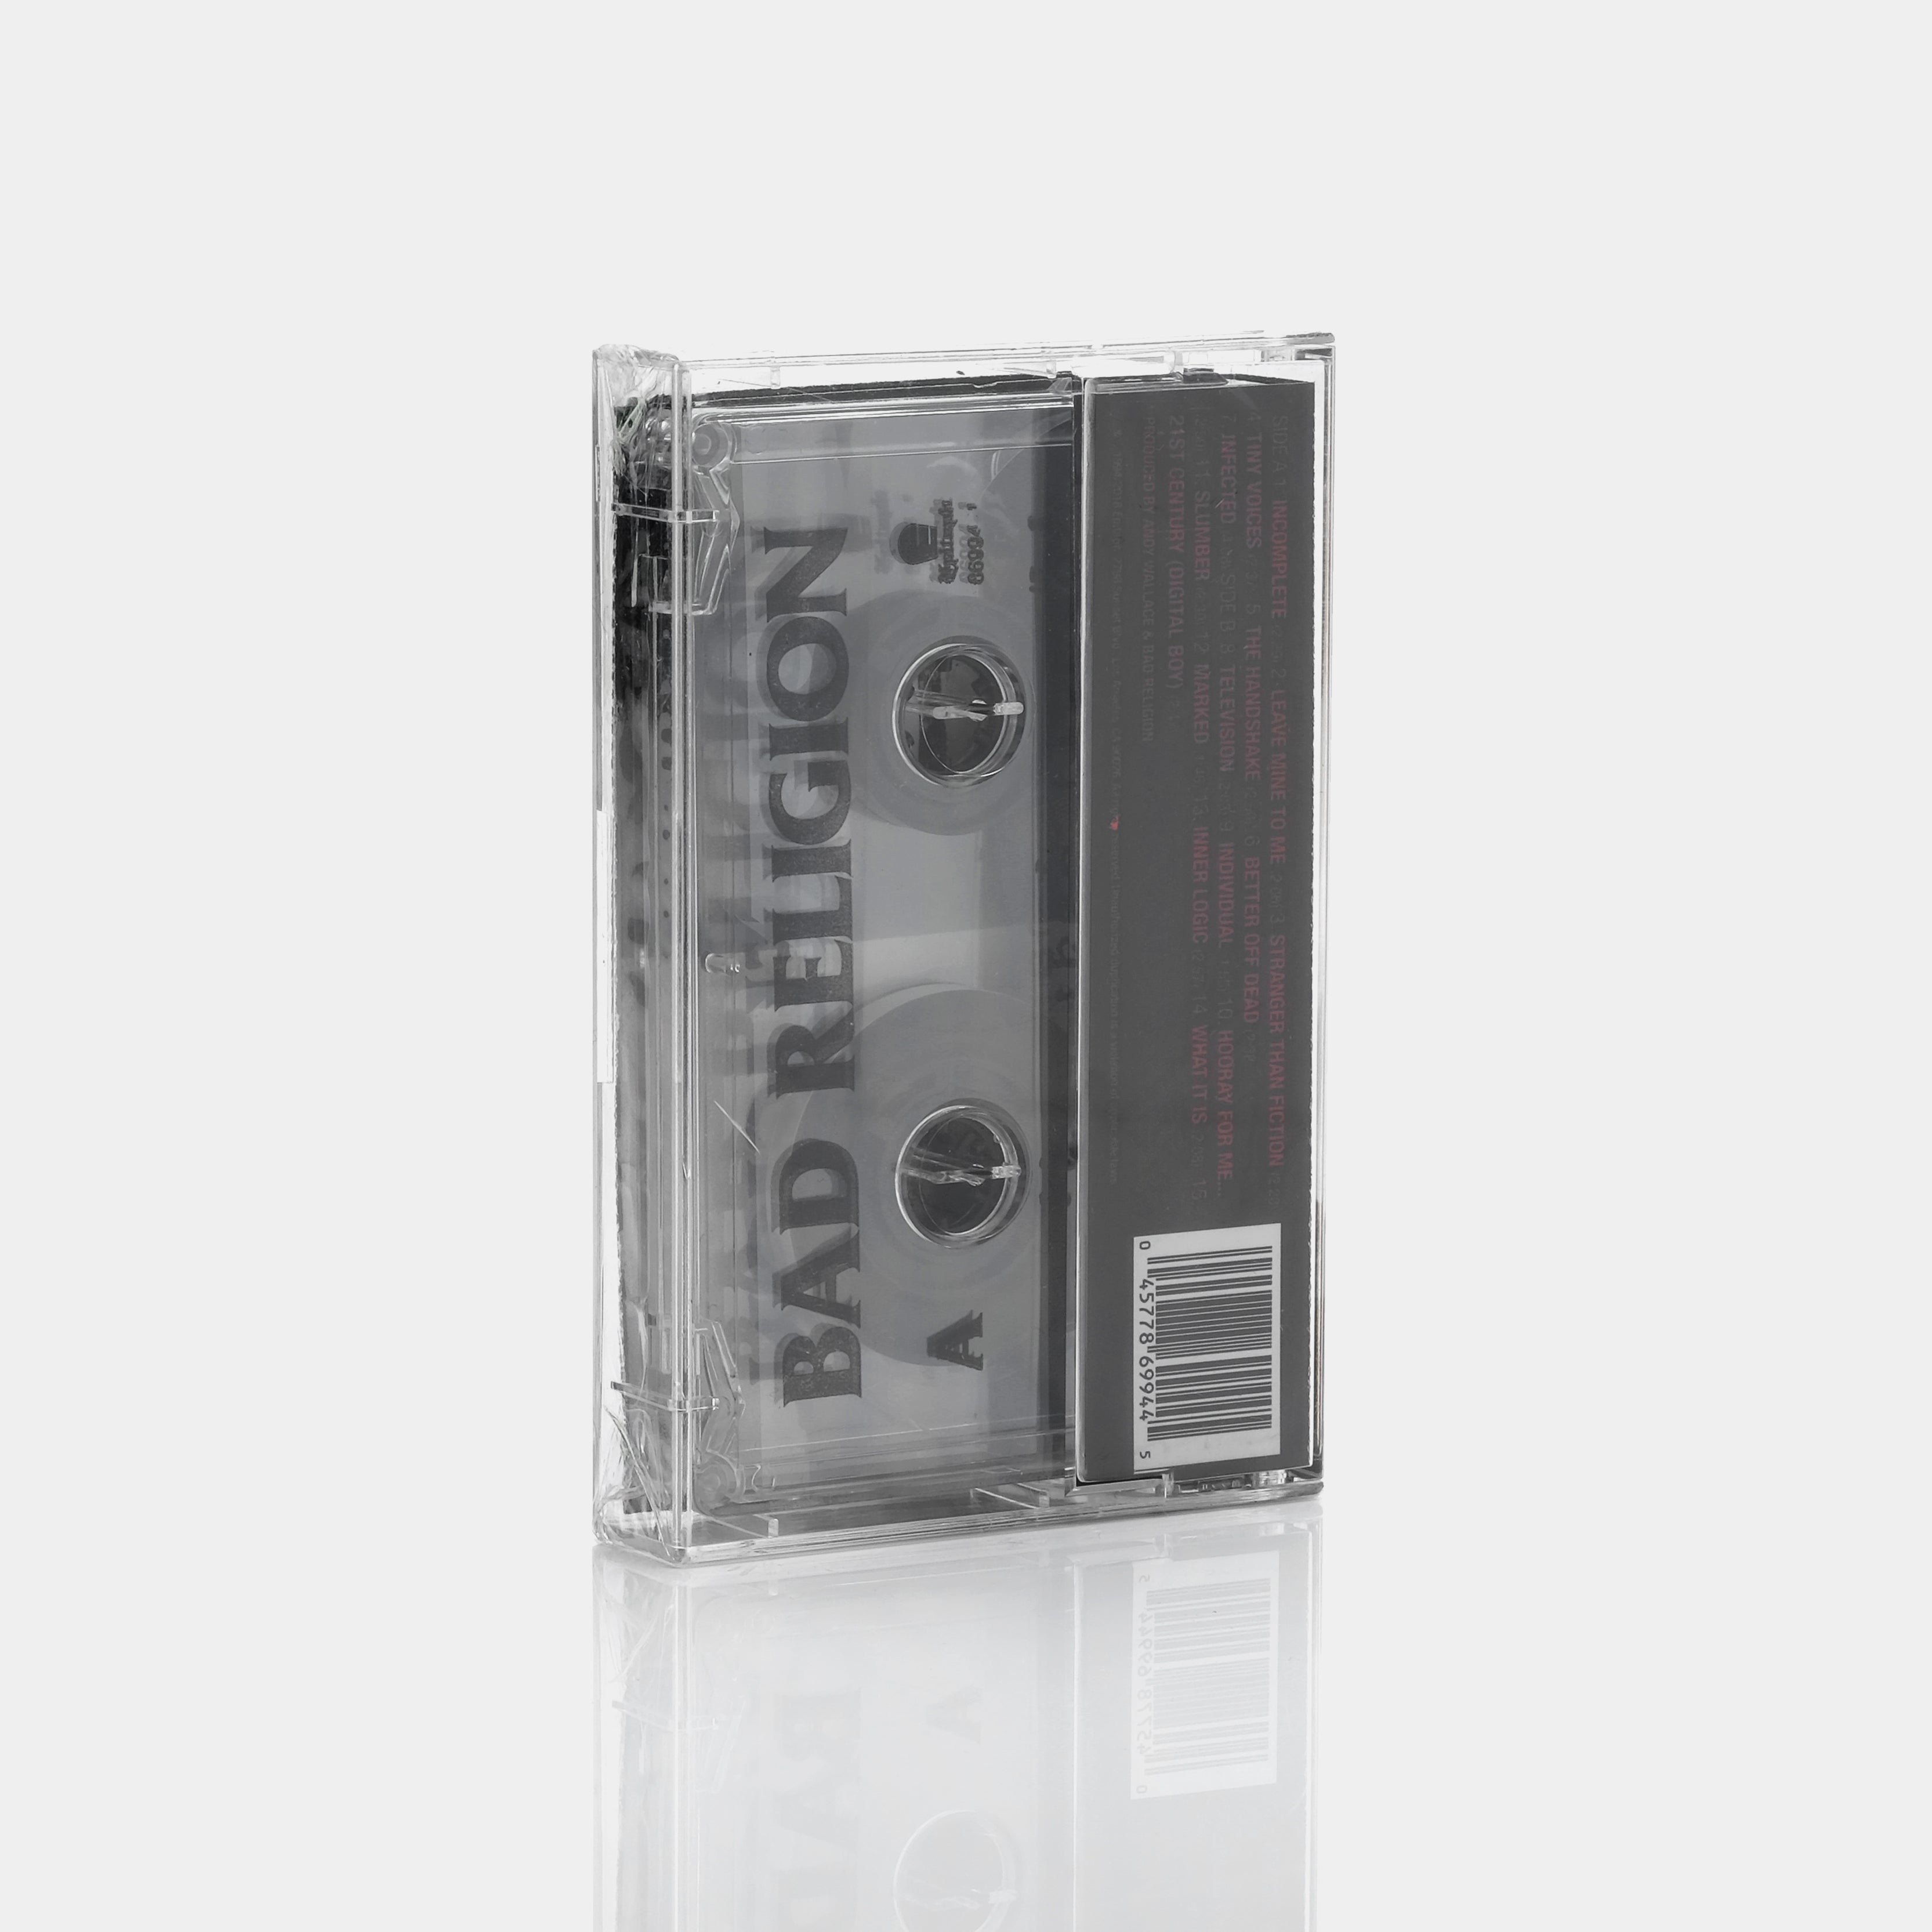 Bad Religion - Stranger Than Fiction Cassette Tape